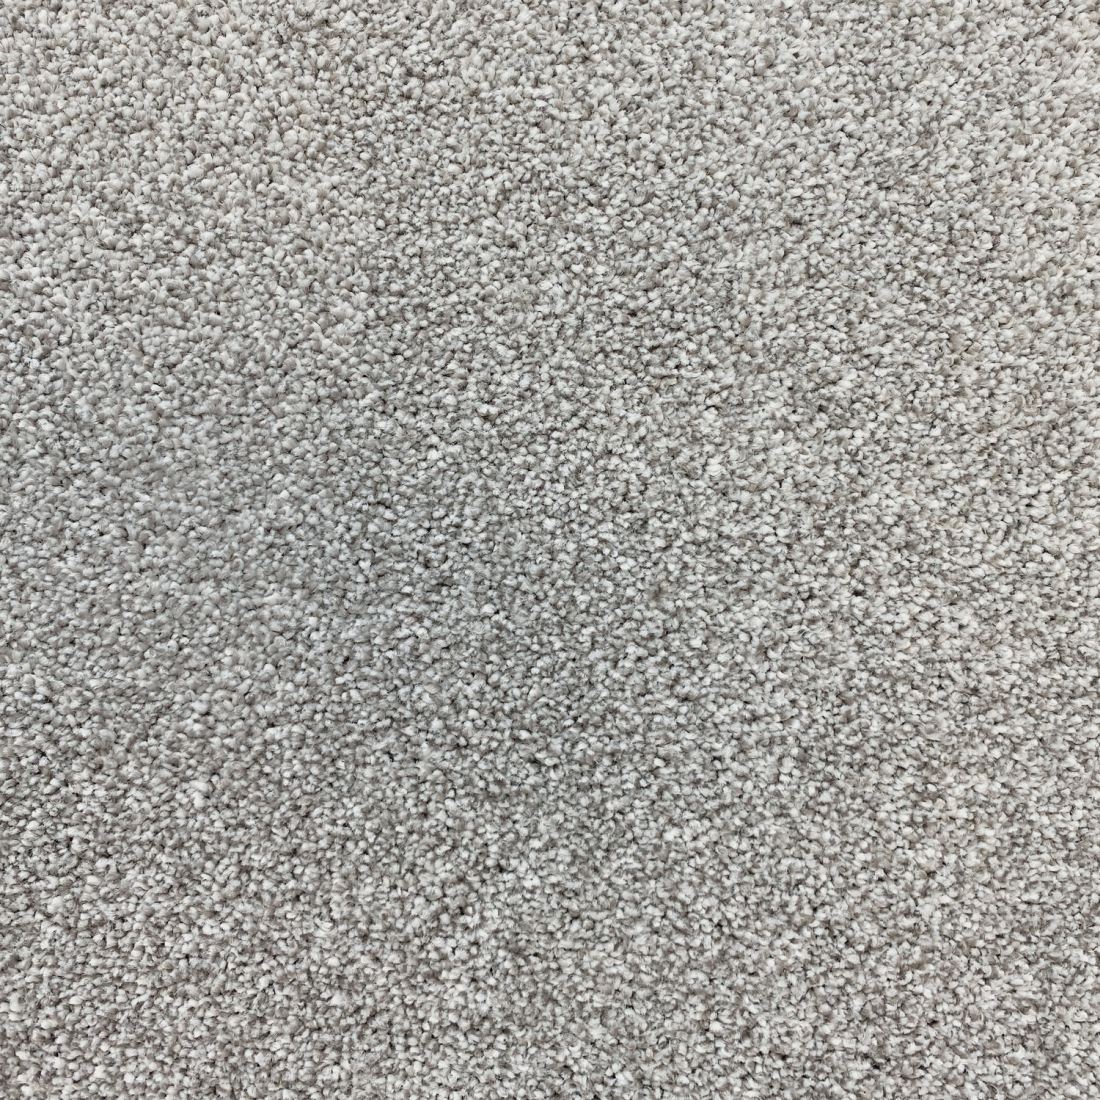 Invincible Rustic Stain Resistant Twist Carpet - Distinction